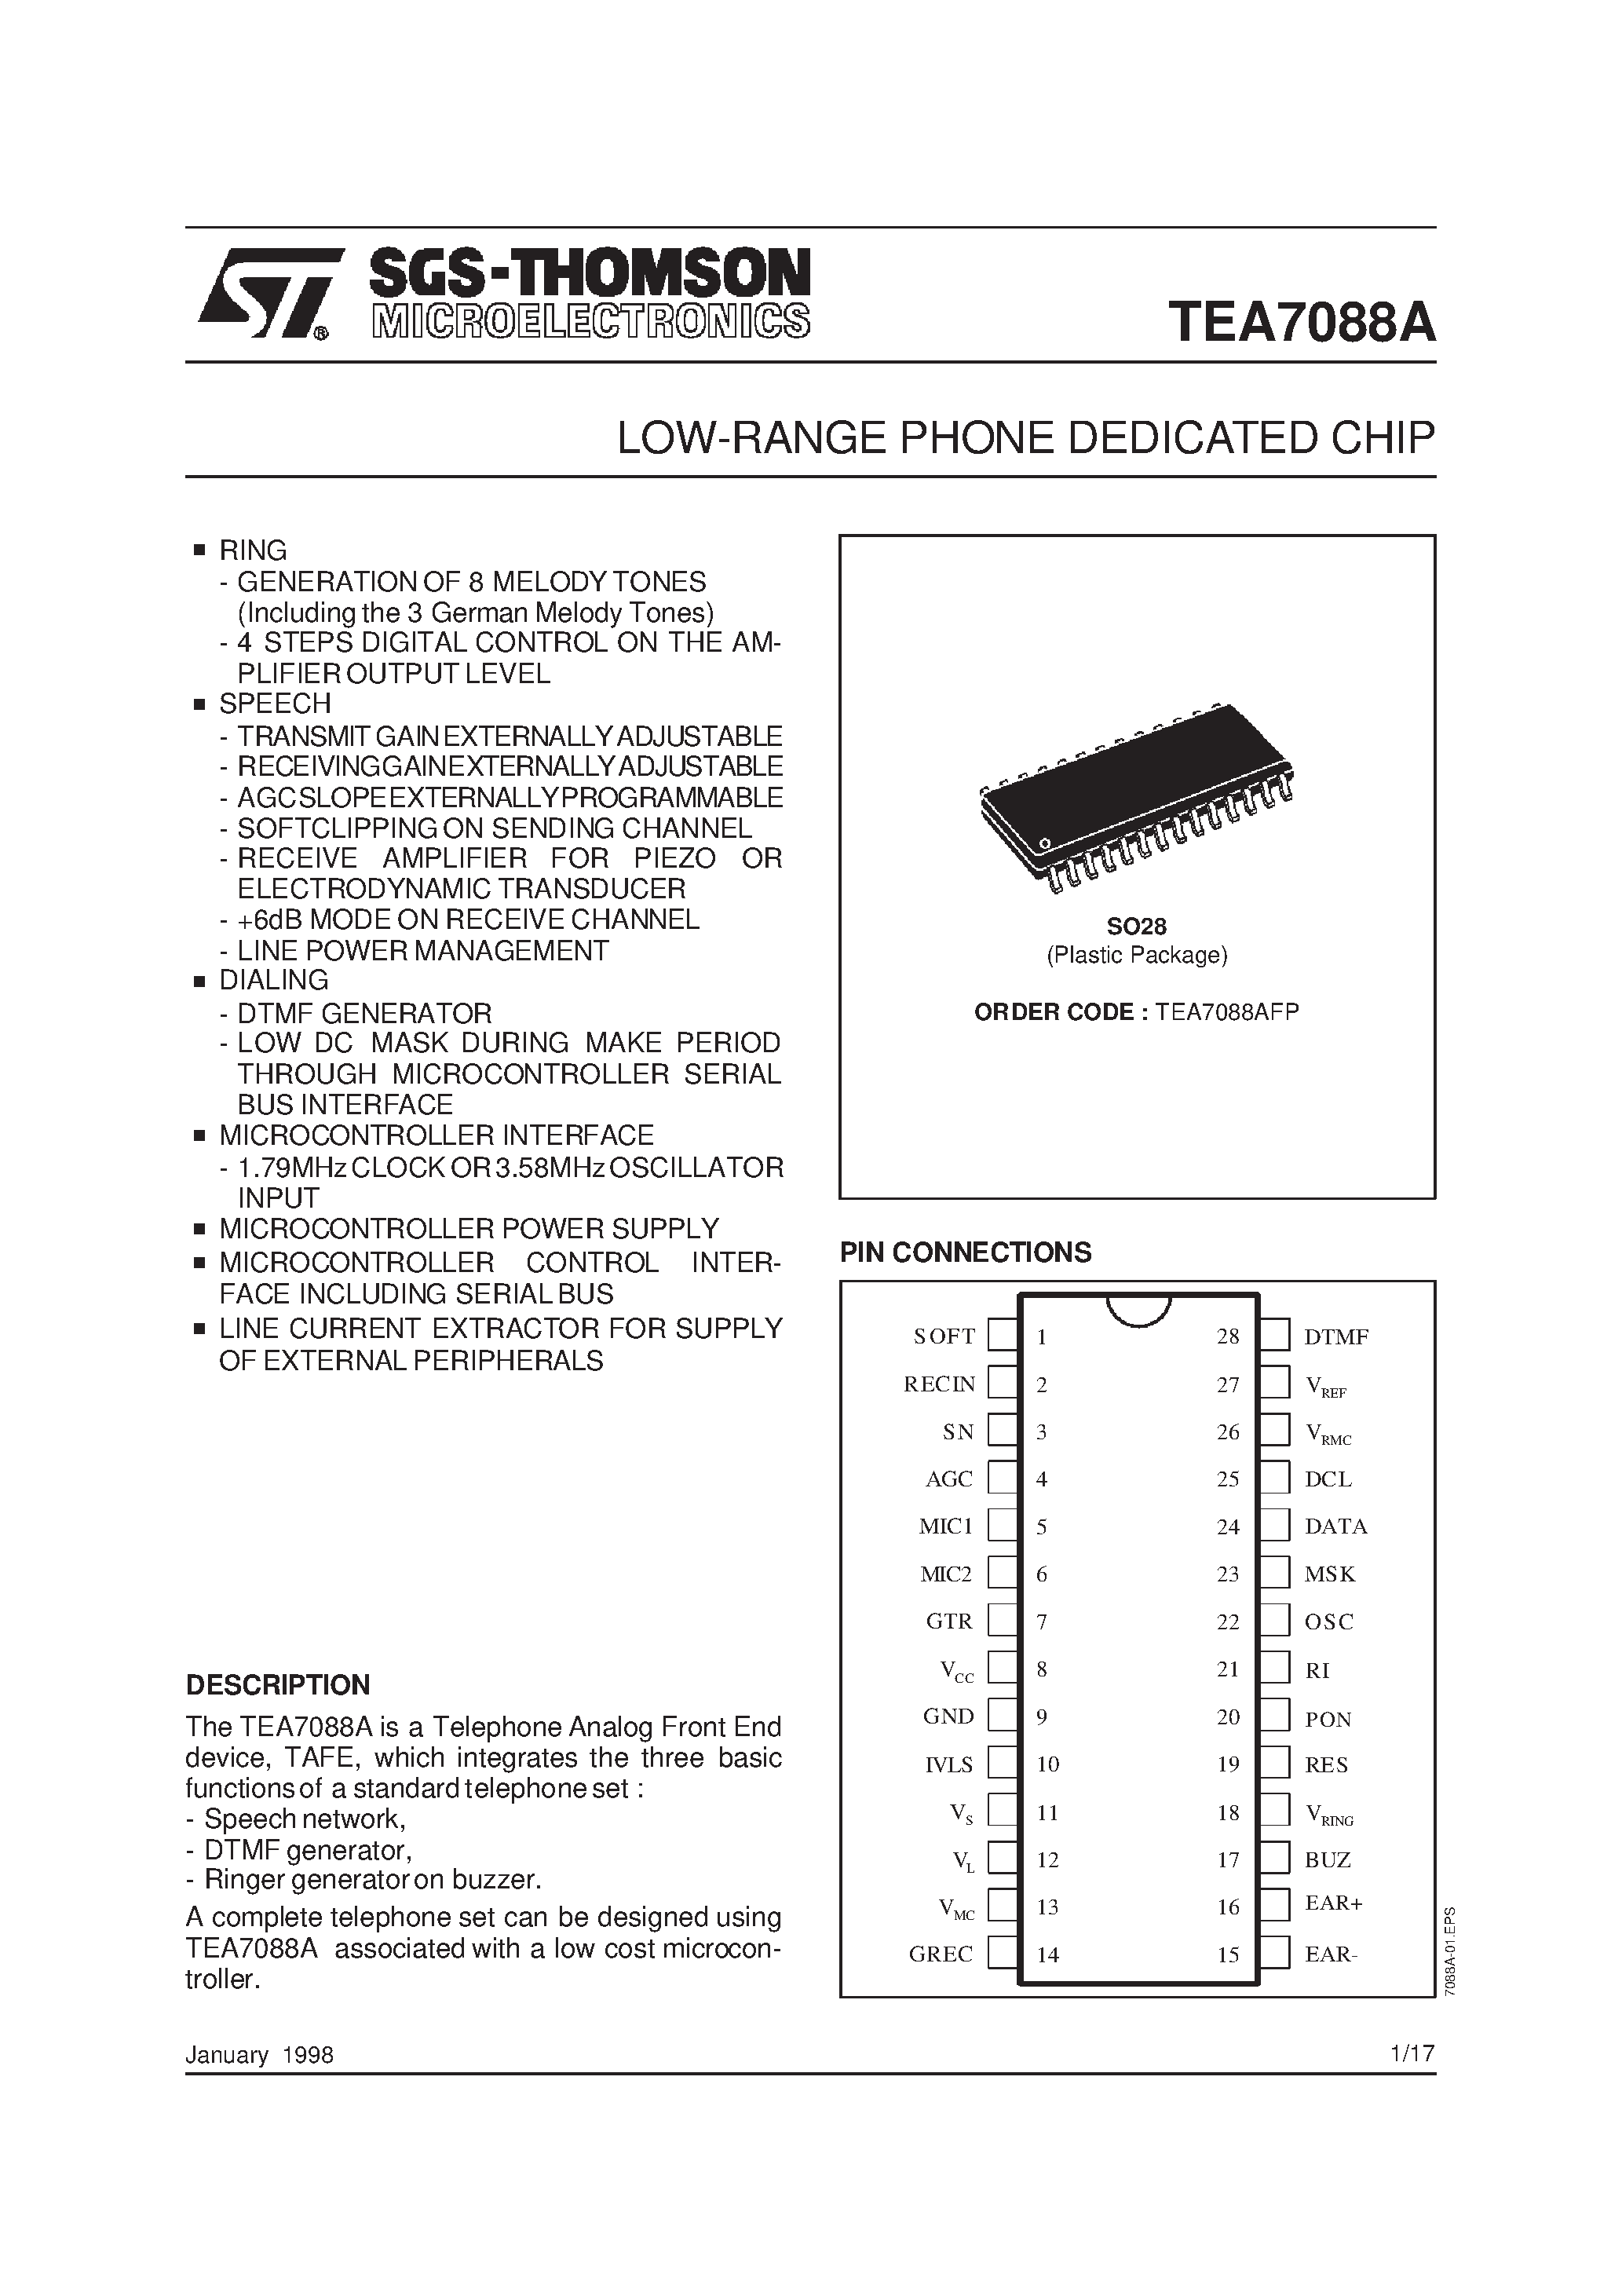 Datasheet TEA7088AFP - LOW-RANGE PHONE DEDICATED CHIP page 1